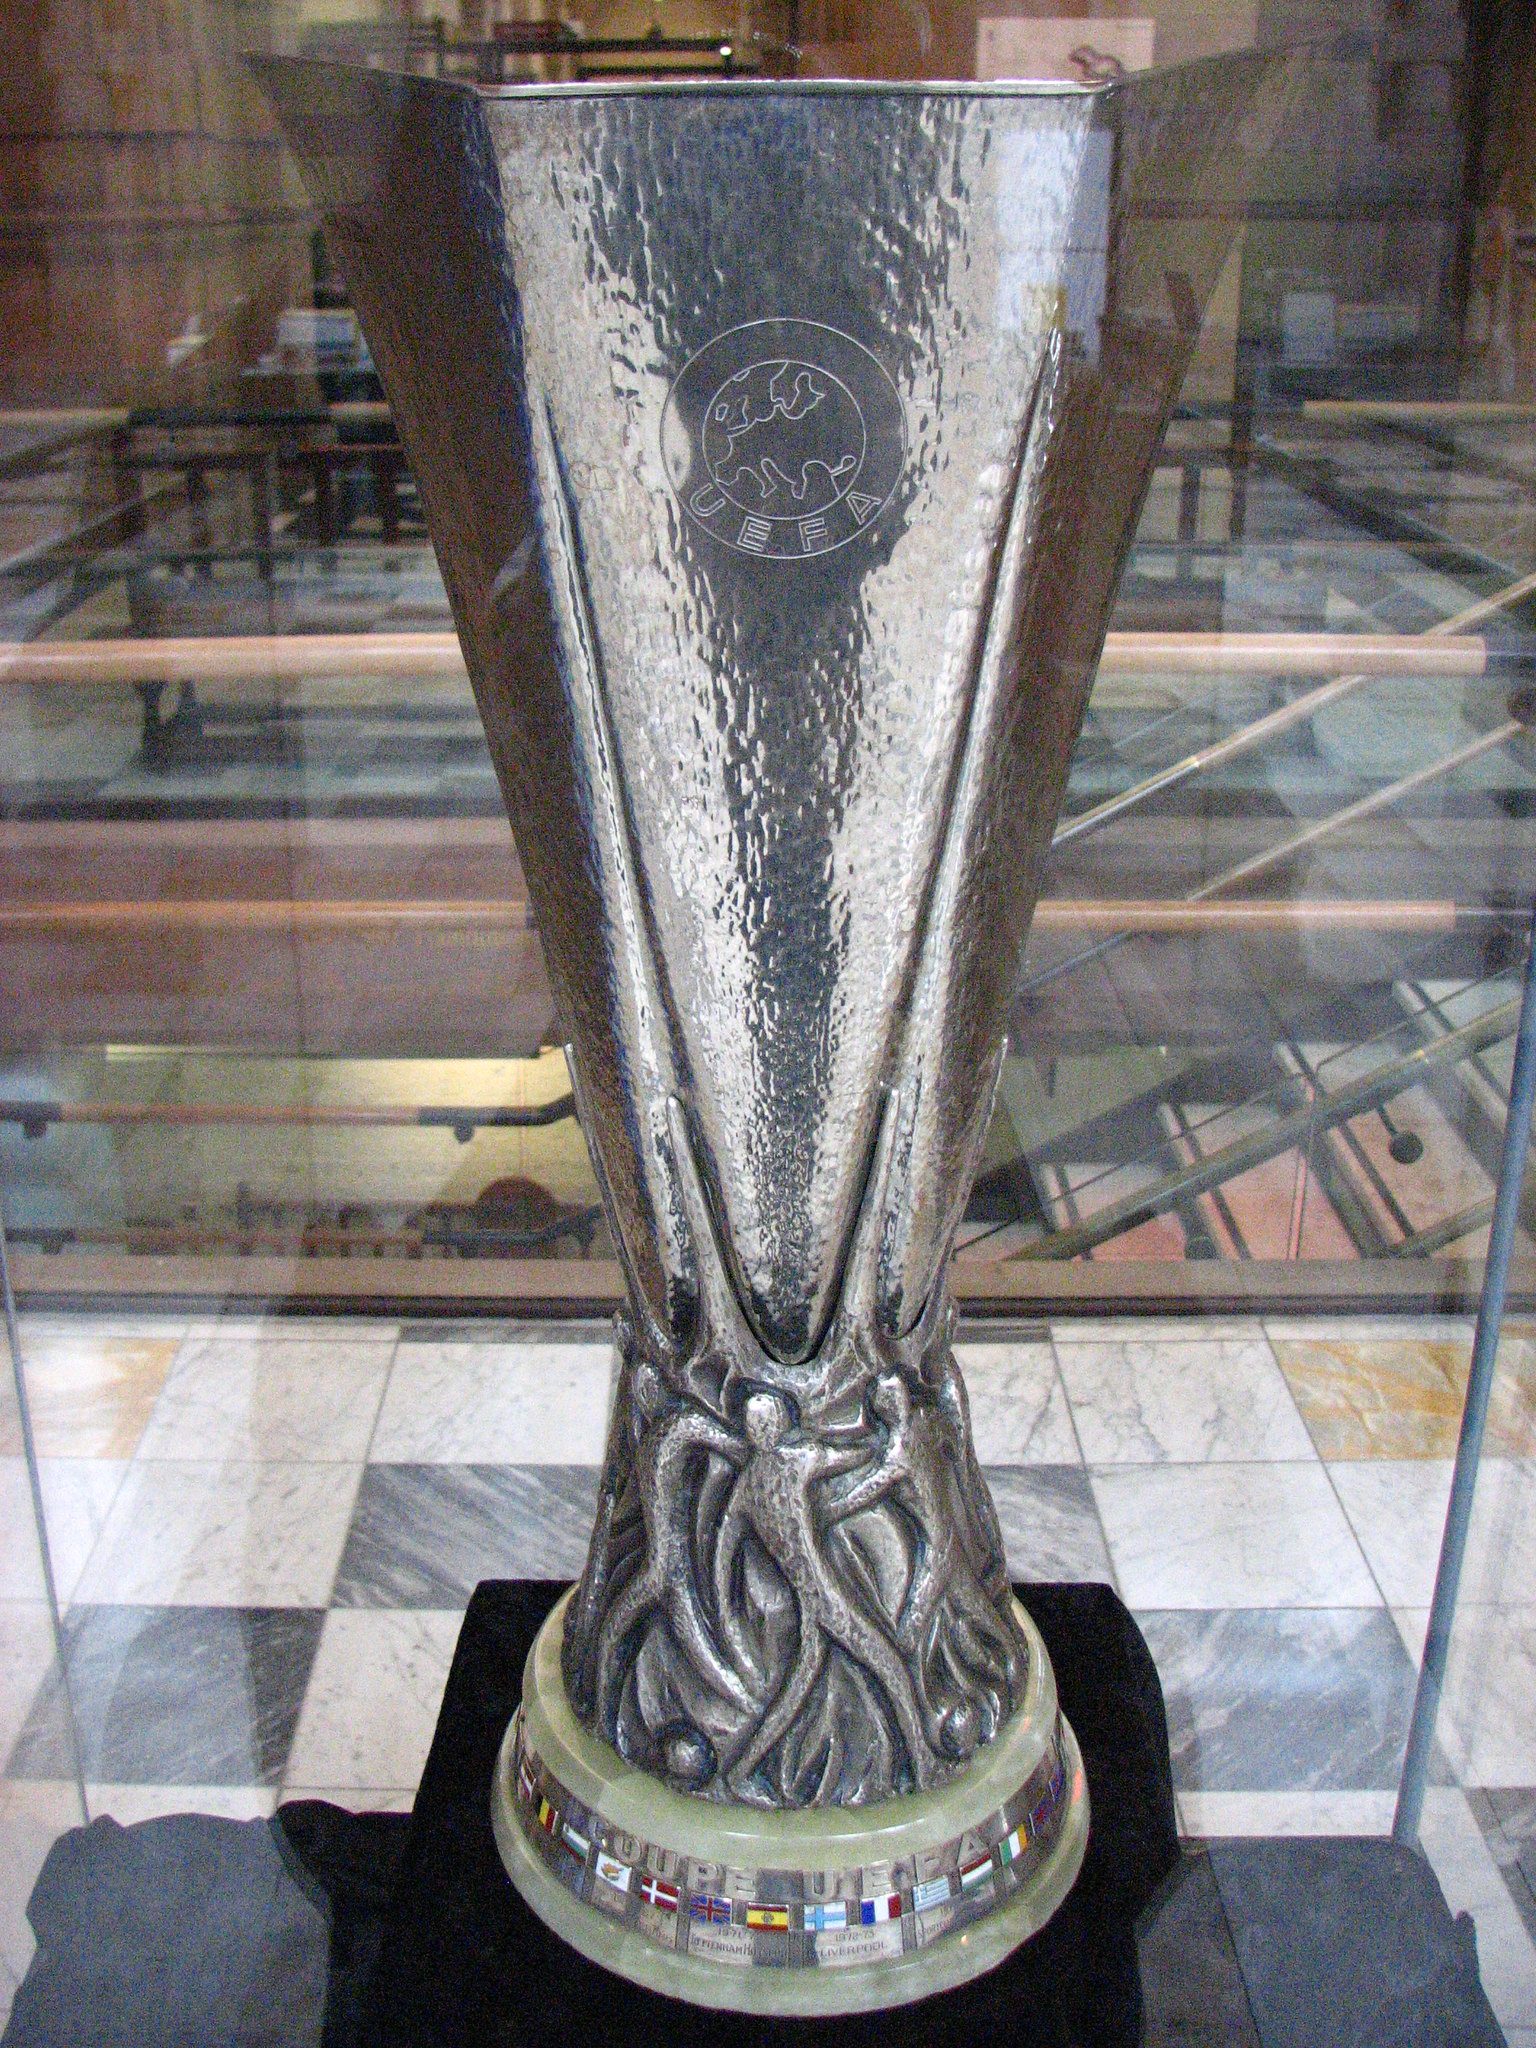 UEFA CUP 2000